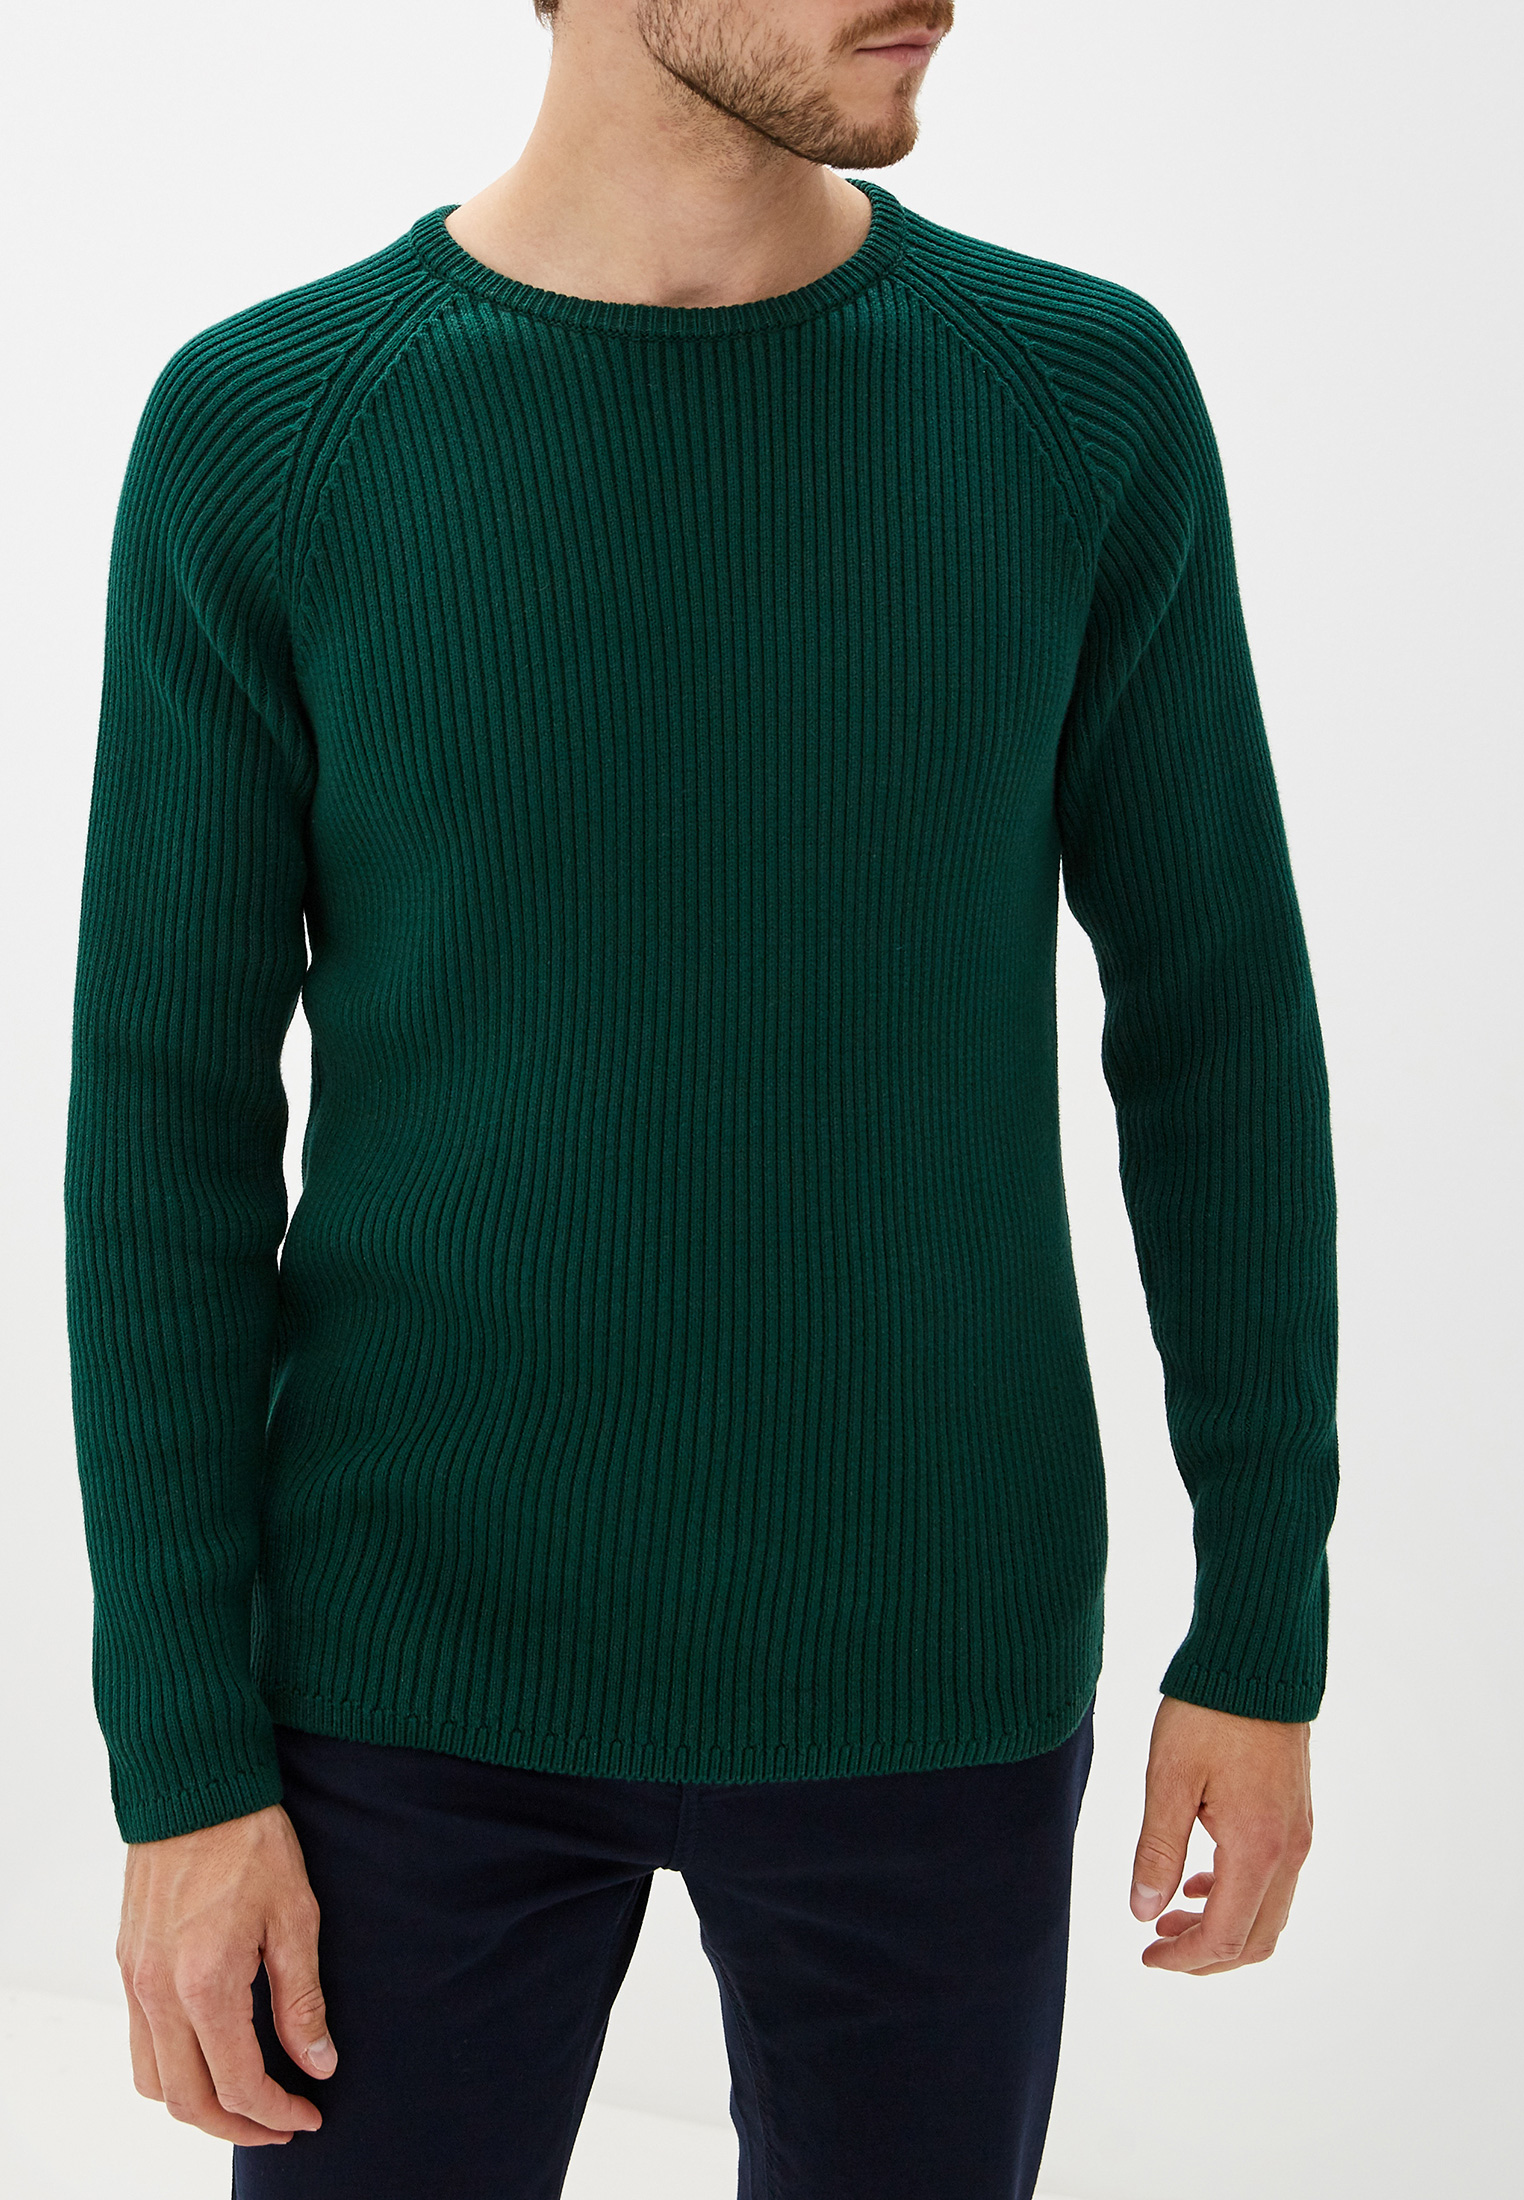 Зеленые свитеры мужские. Свитера мужские selected homme. Зеленый джемпер мужской. Темно зеленый свитер мужской. Зеленый пуловер мужской.